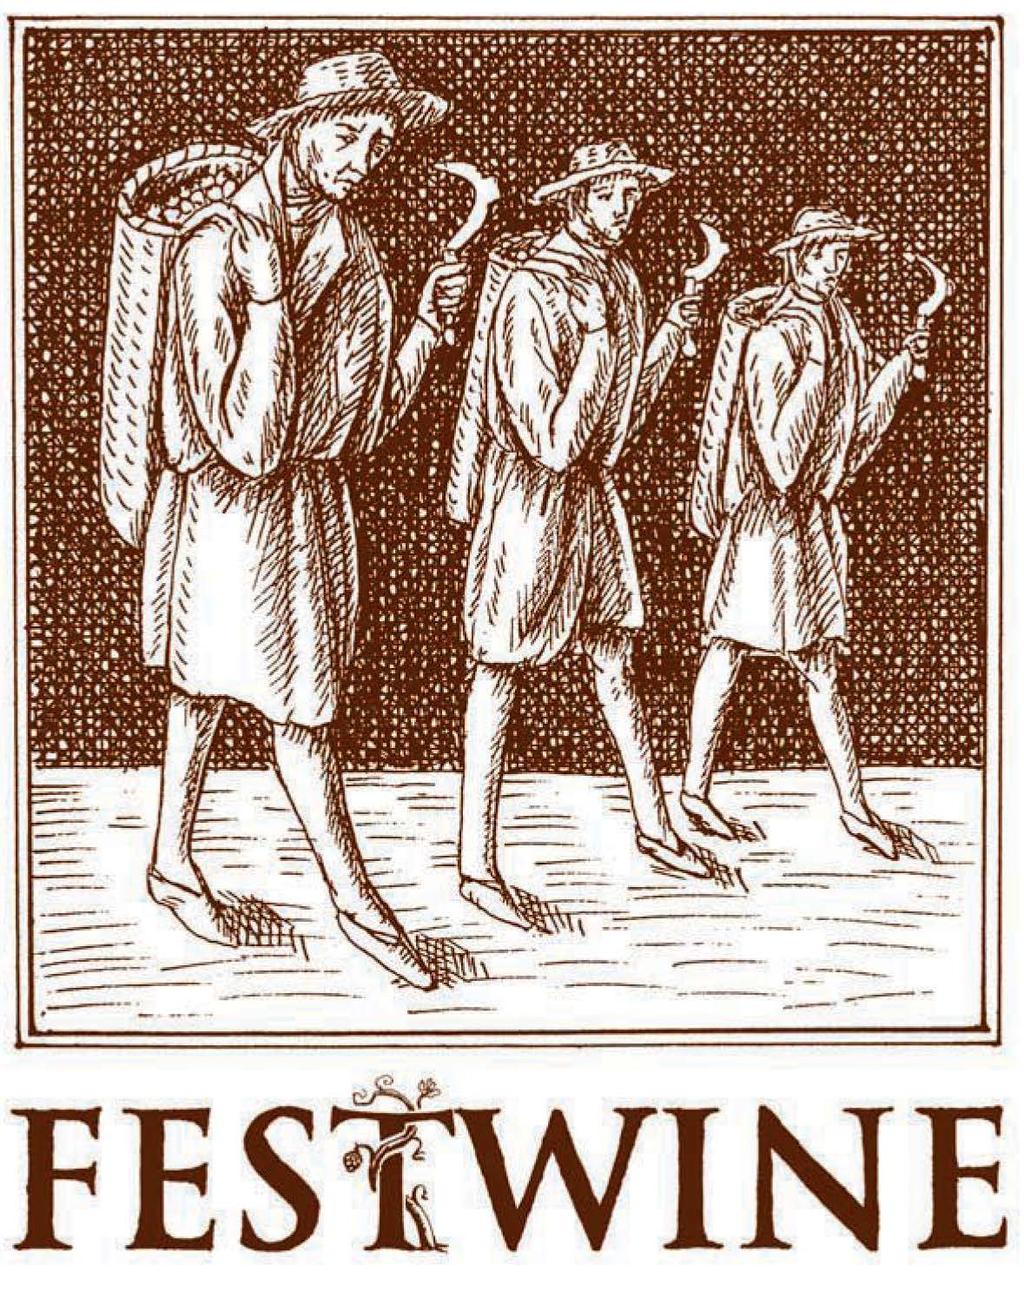 Festwine 2018 Mezinárodní soutěž vín Velké